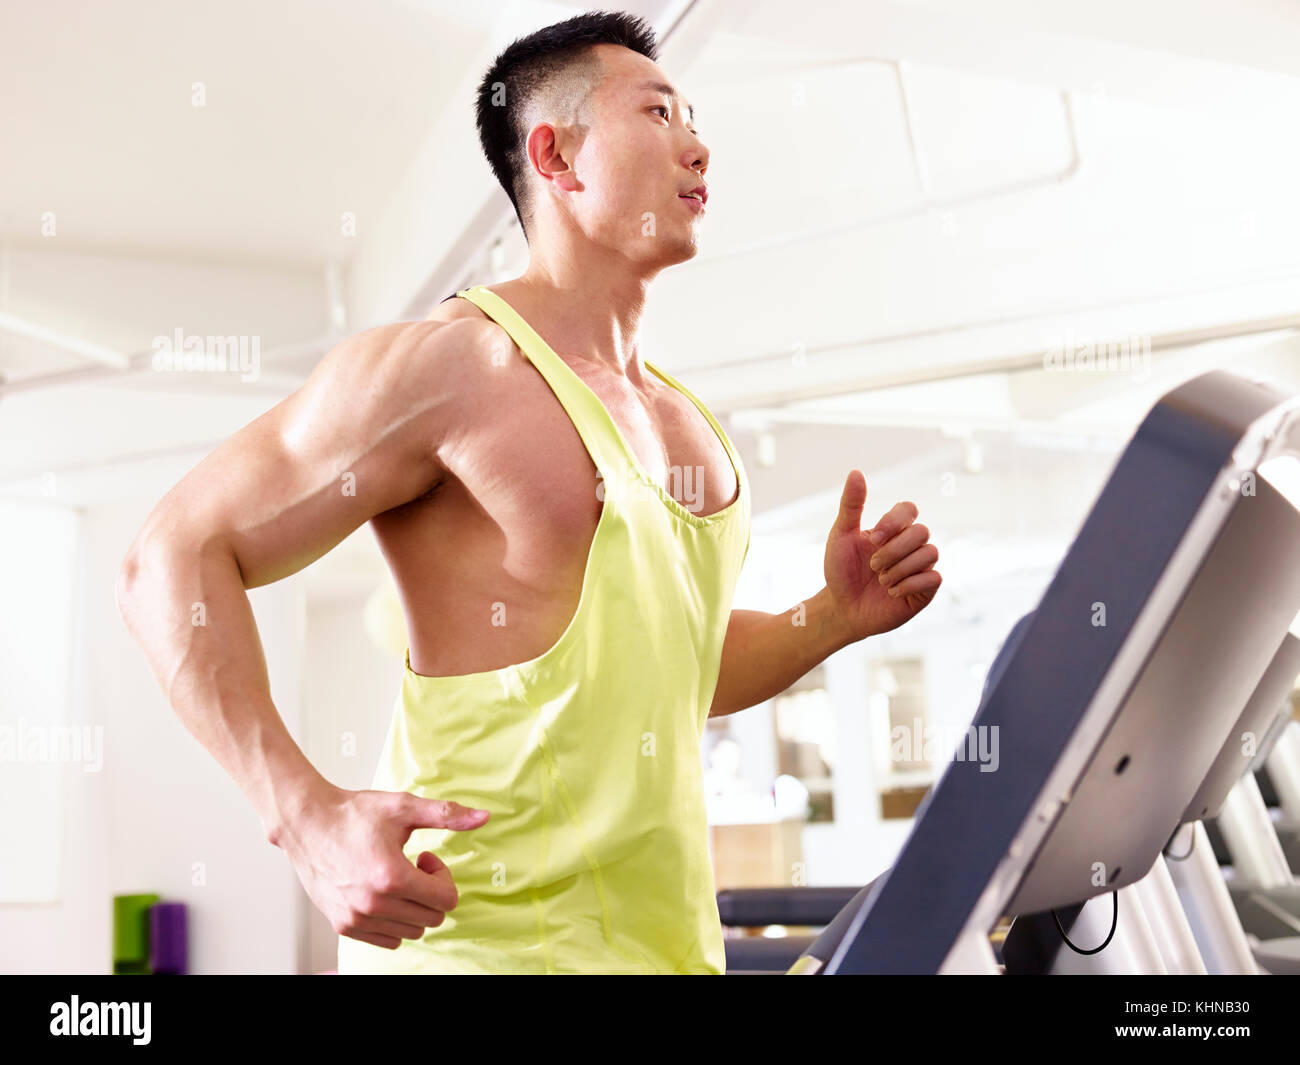 Asiatische Männlich Body Builder auf Laufband im Fitnessstudio, Seitenansicht. Stockfoto